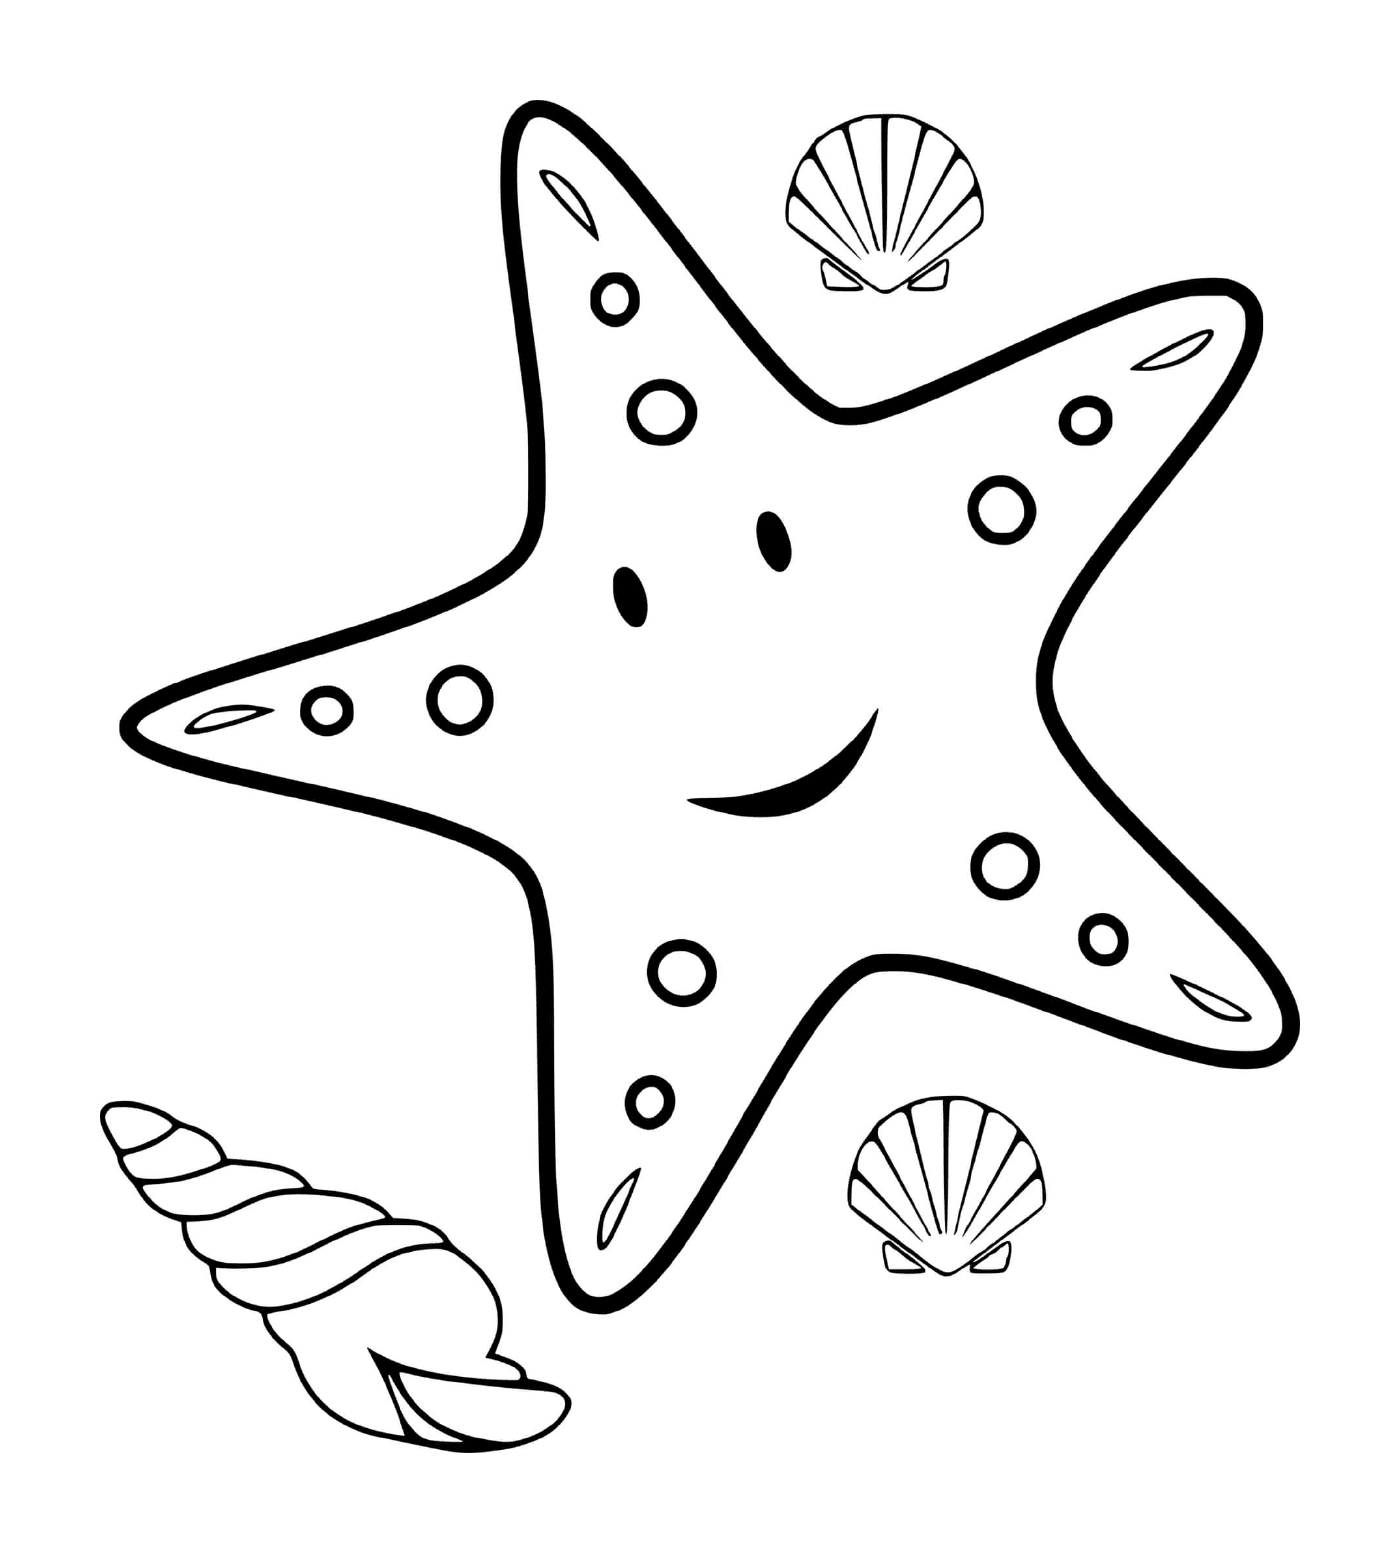  Estrella marina de colores 